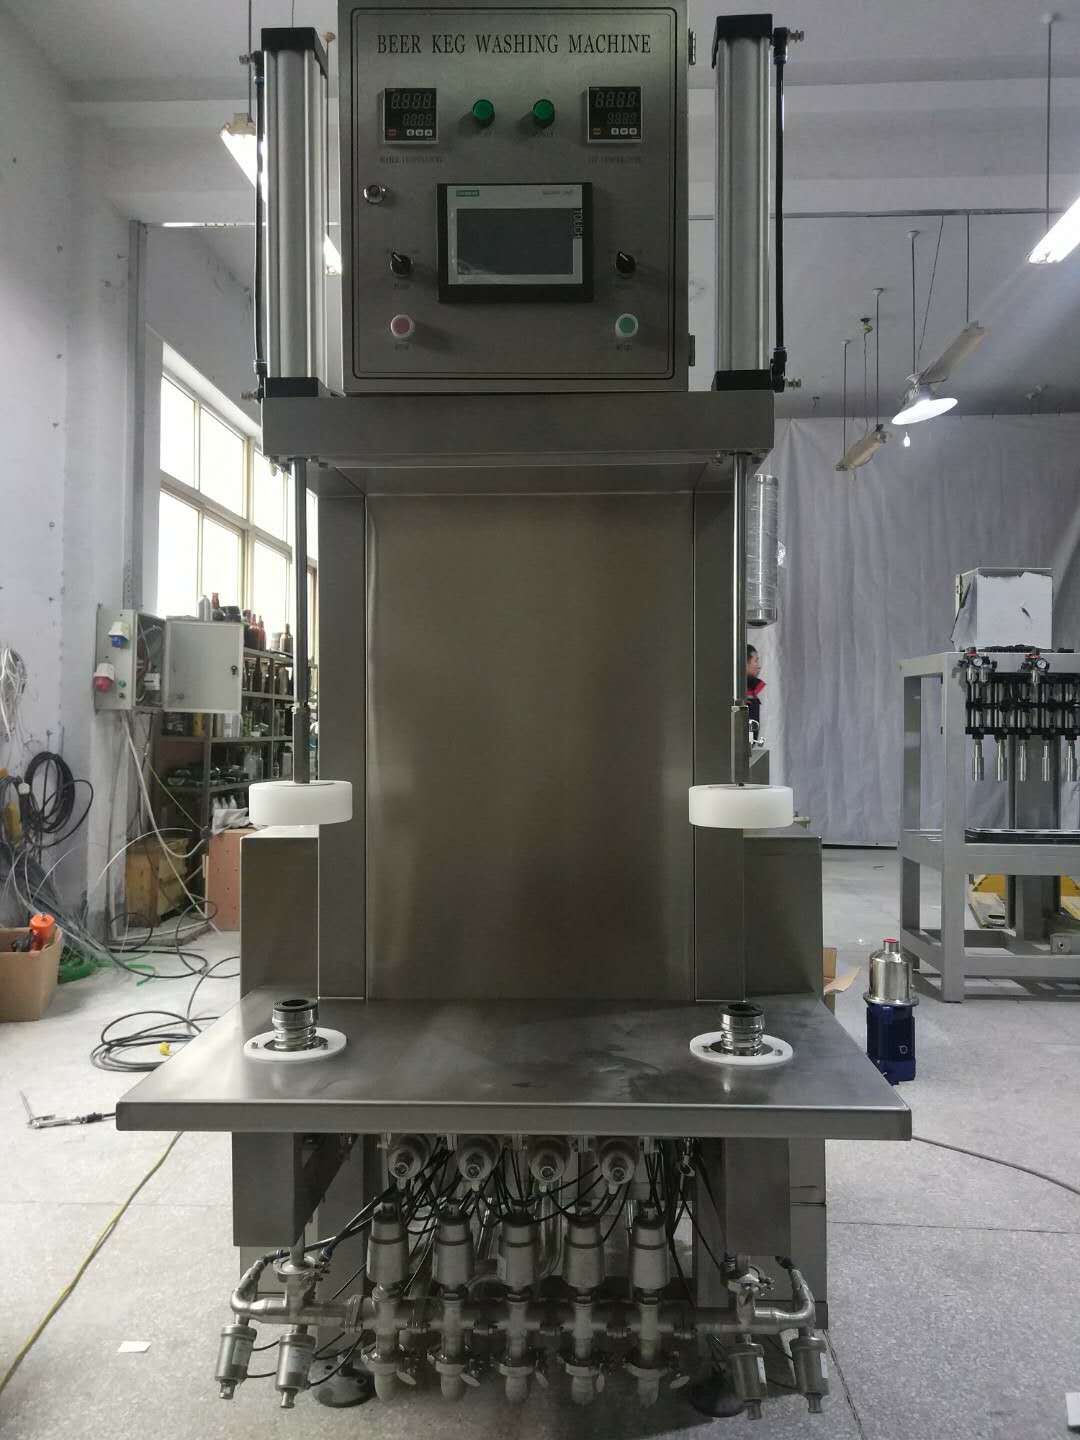 Semi-Automatic Keg Washer